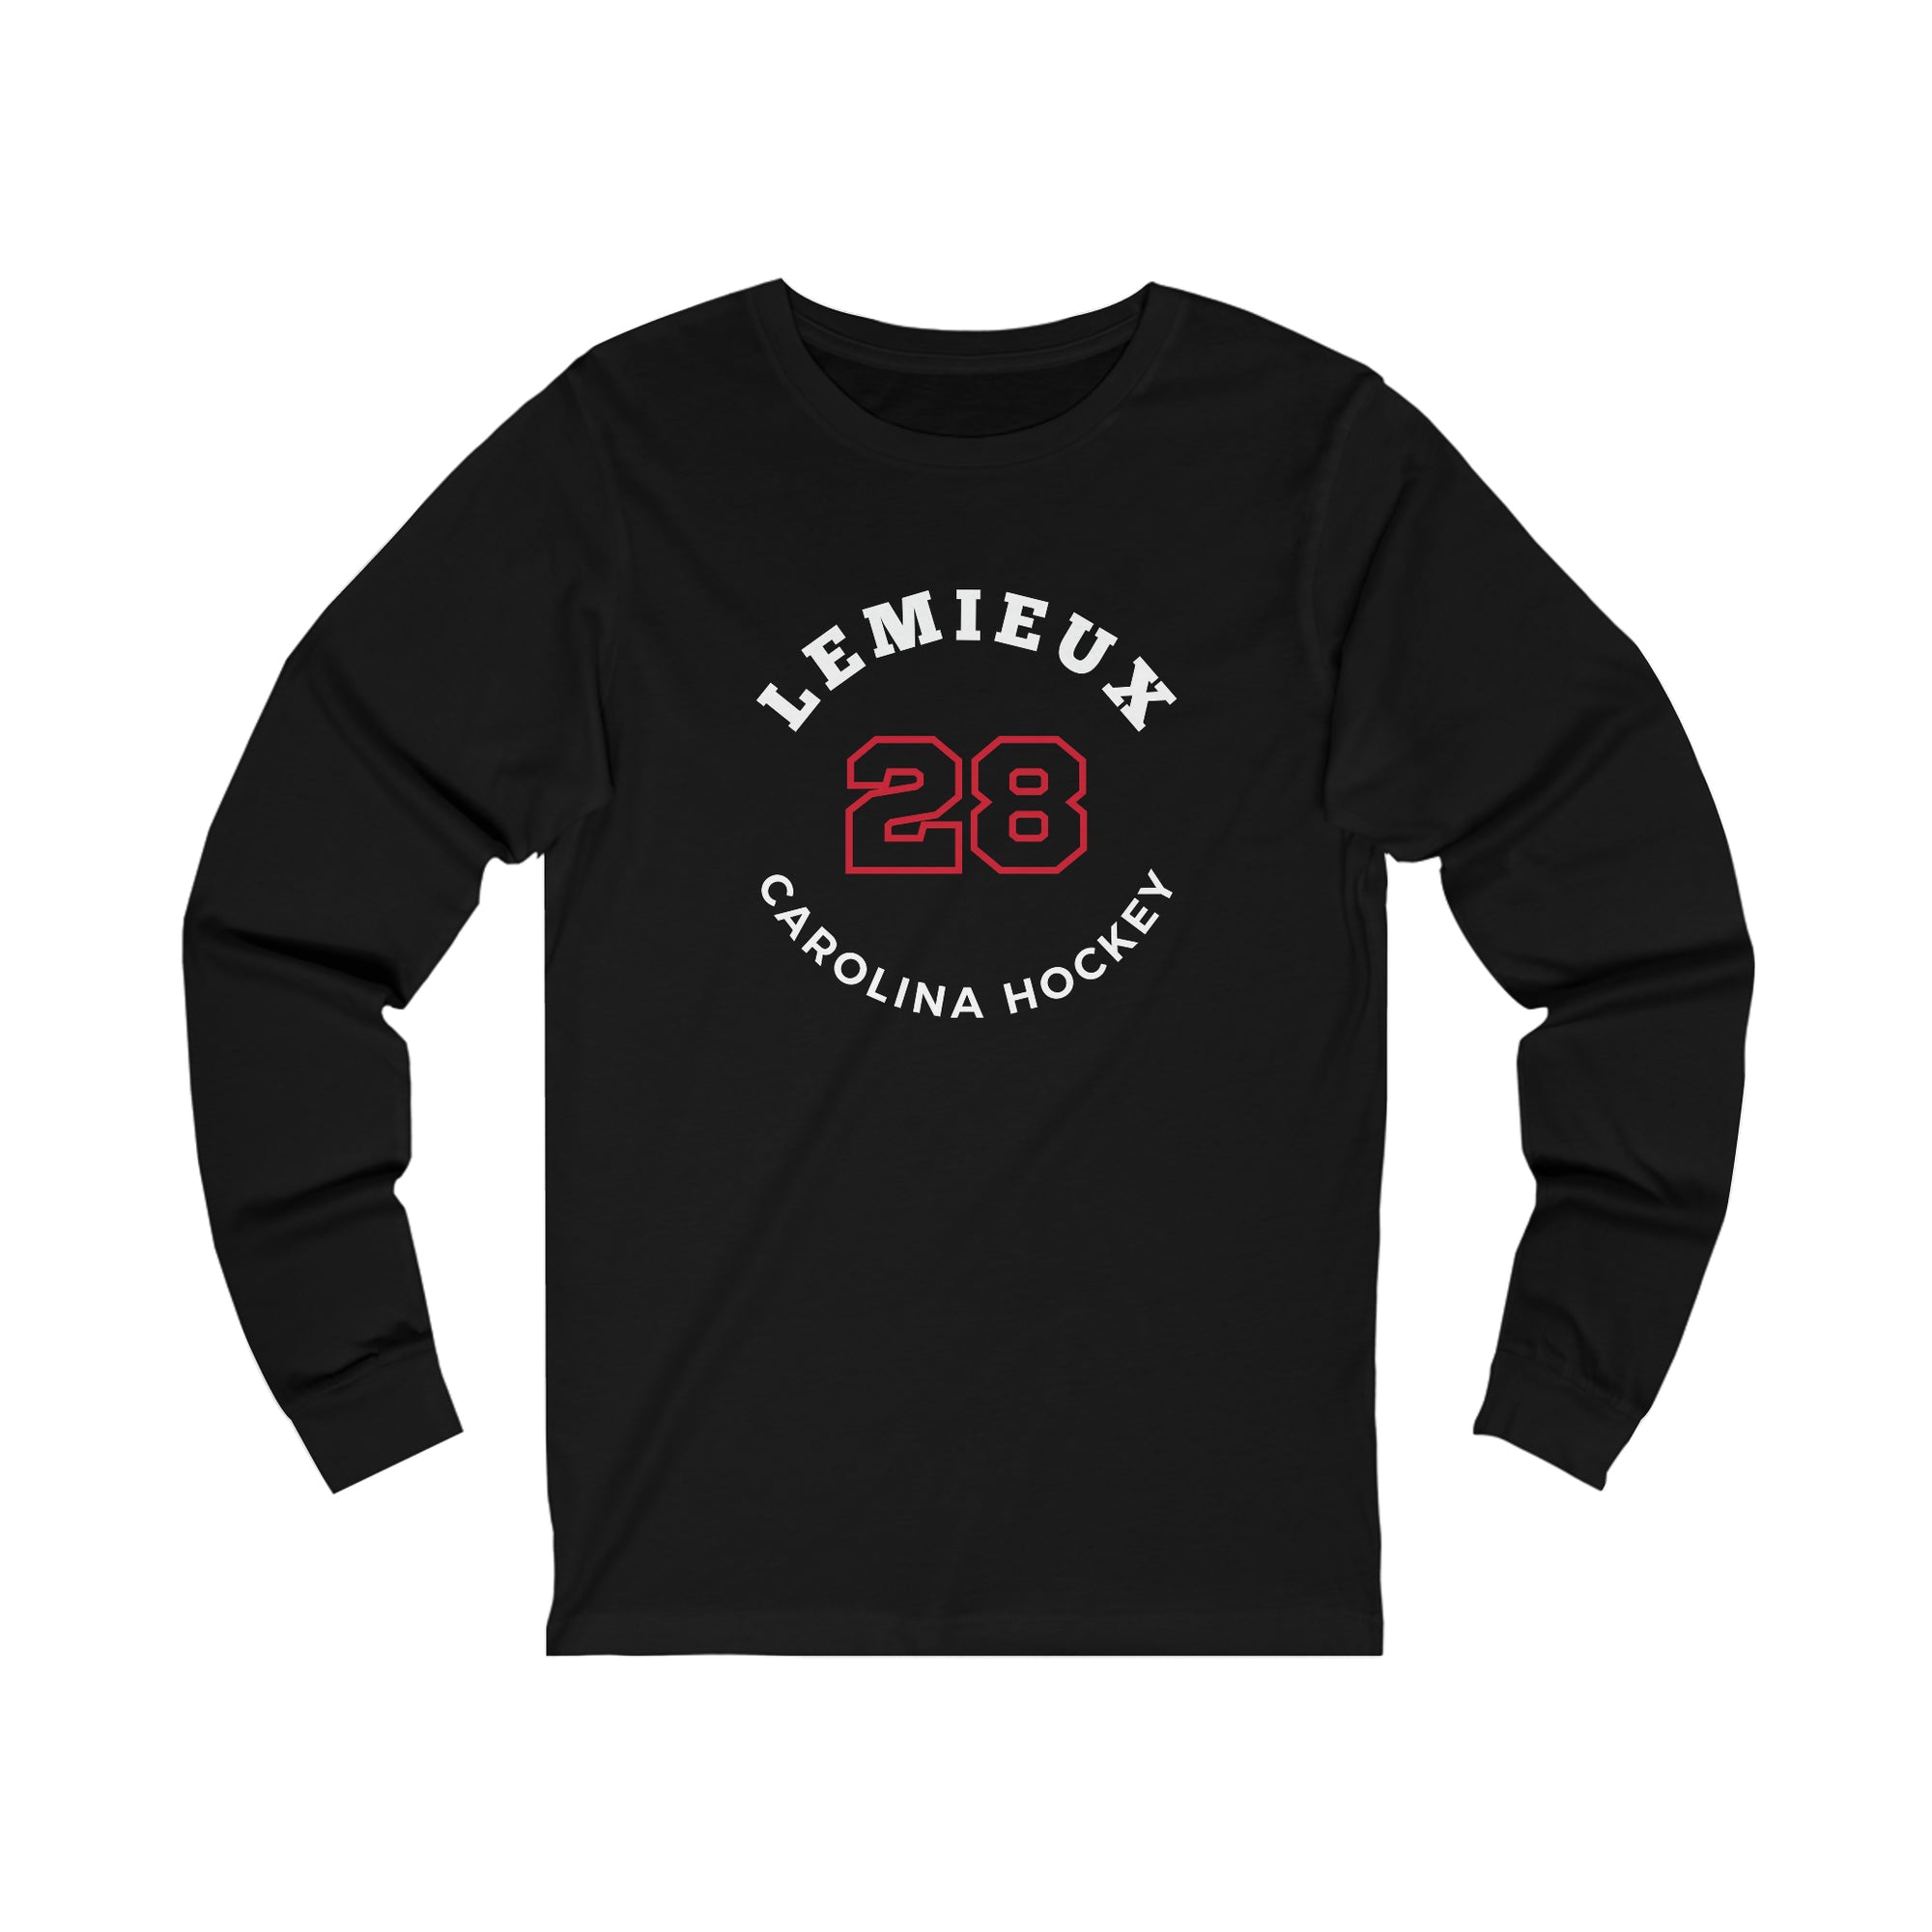 Lemieux 28 Carolina Hockey Number Arch Design Unisex Jersey Long Sleeve Shirt